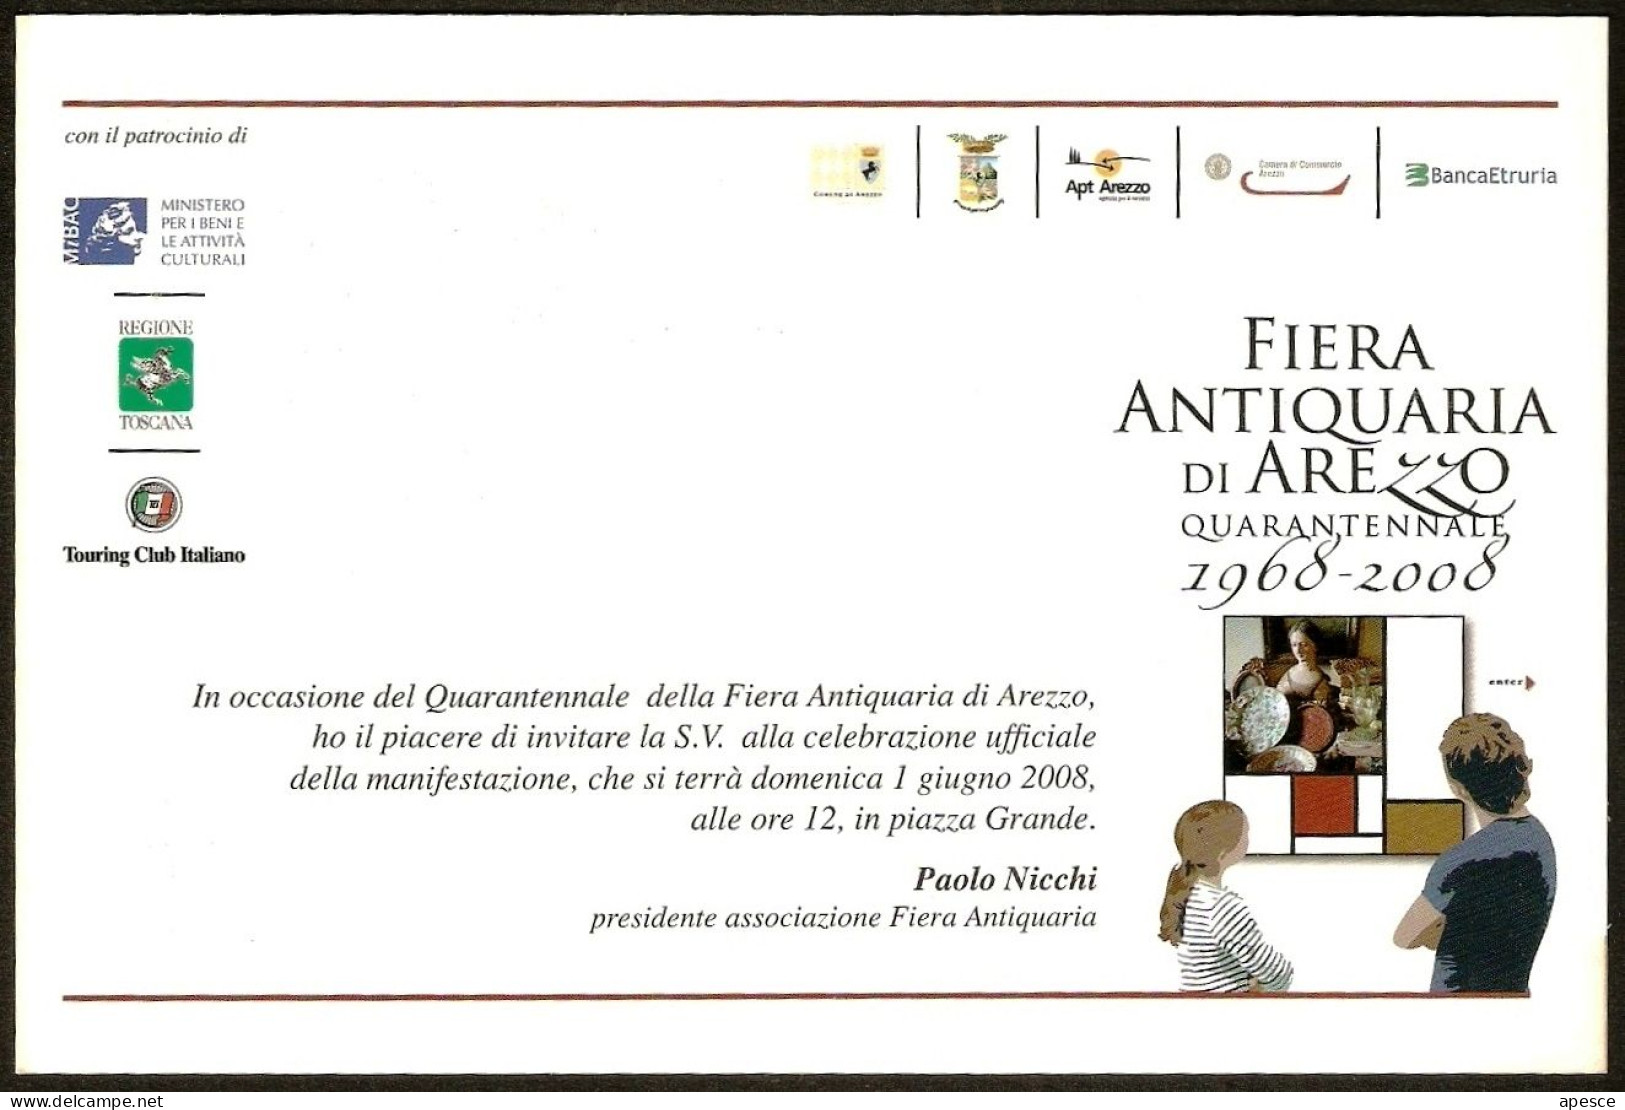 ITALIA - FIERA ANTIQUARIA DI AREZZO - QUARANTENNALE - 1968/2008 - CARTOLINA INVITO MANIFESTAZIONE - I - Marktplaatsen